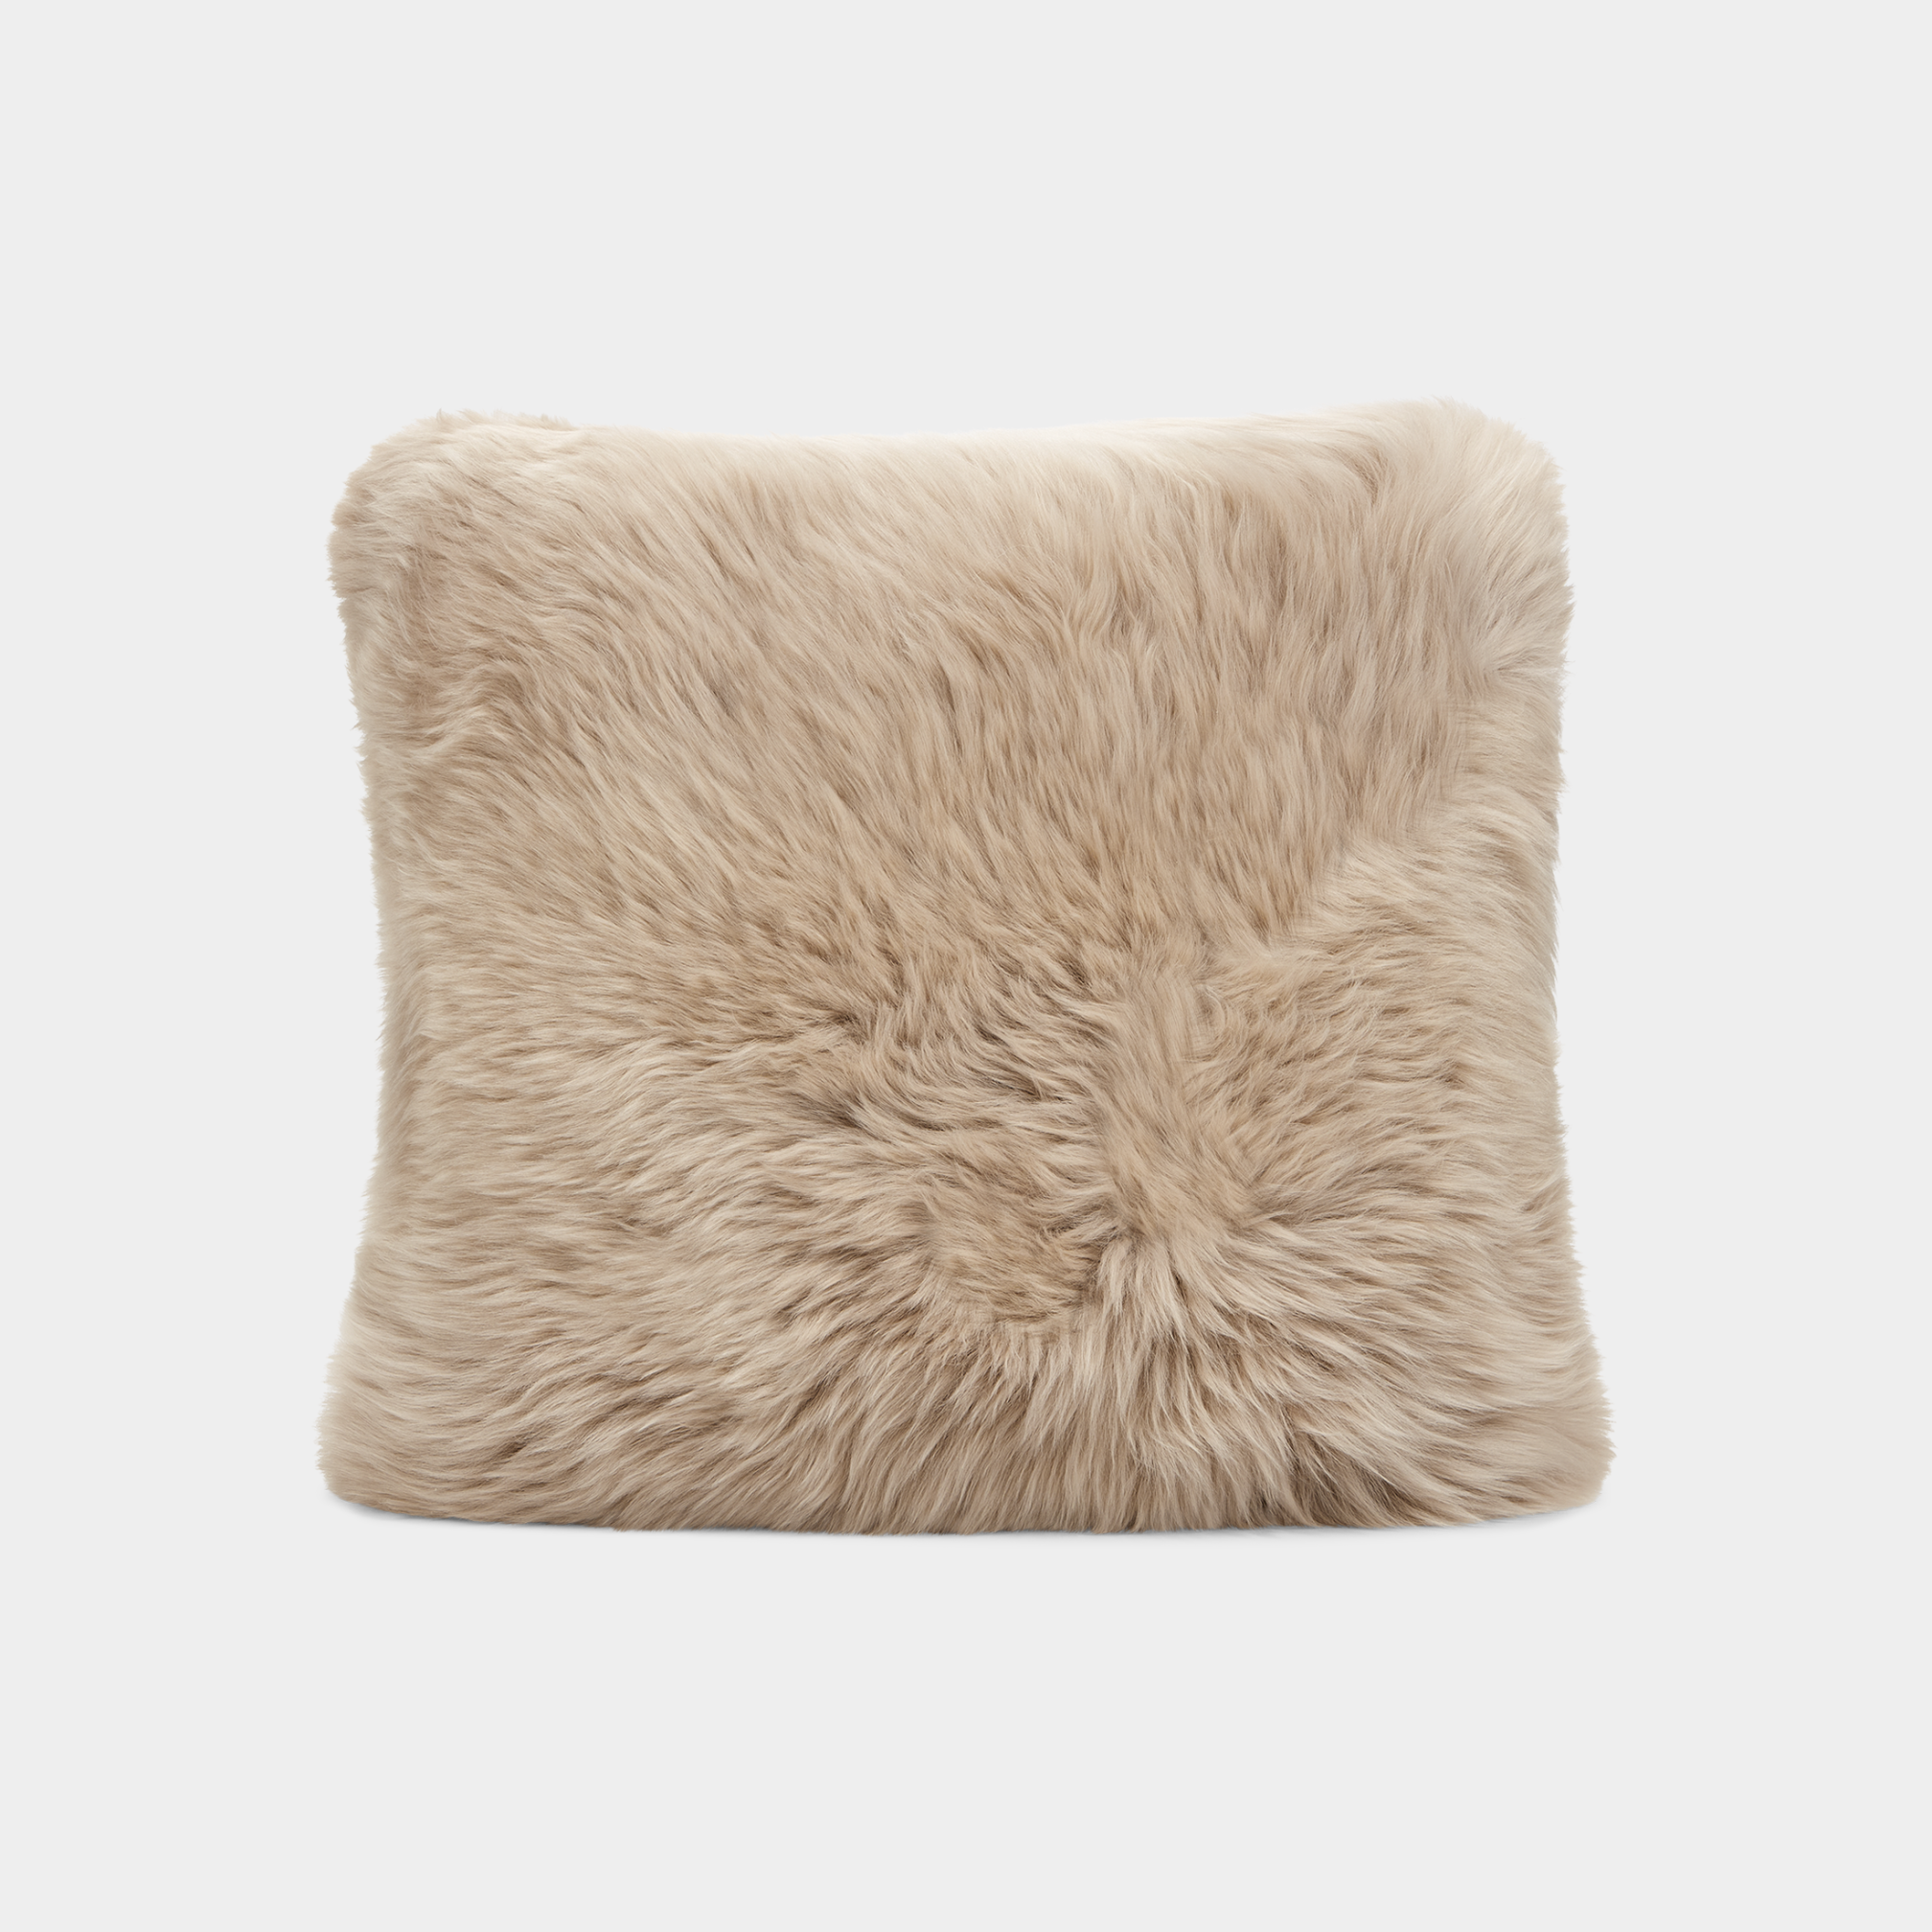 Sheepskin Pillow 18